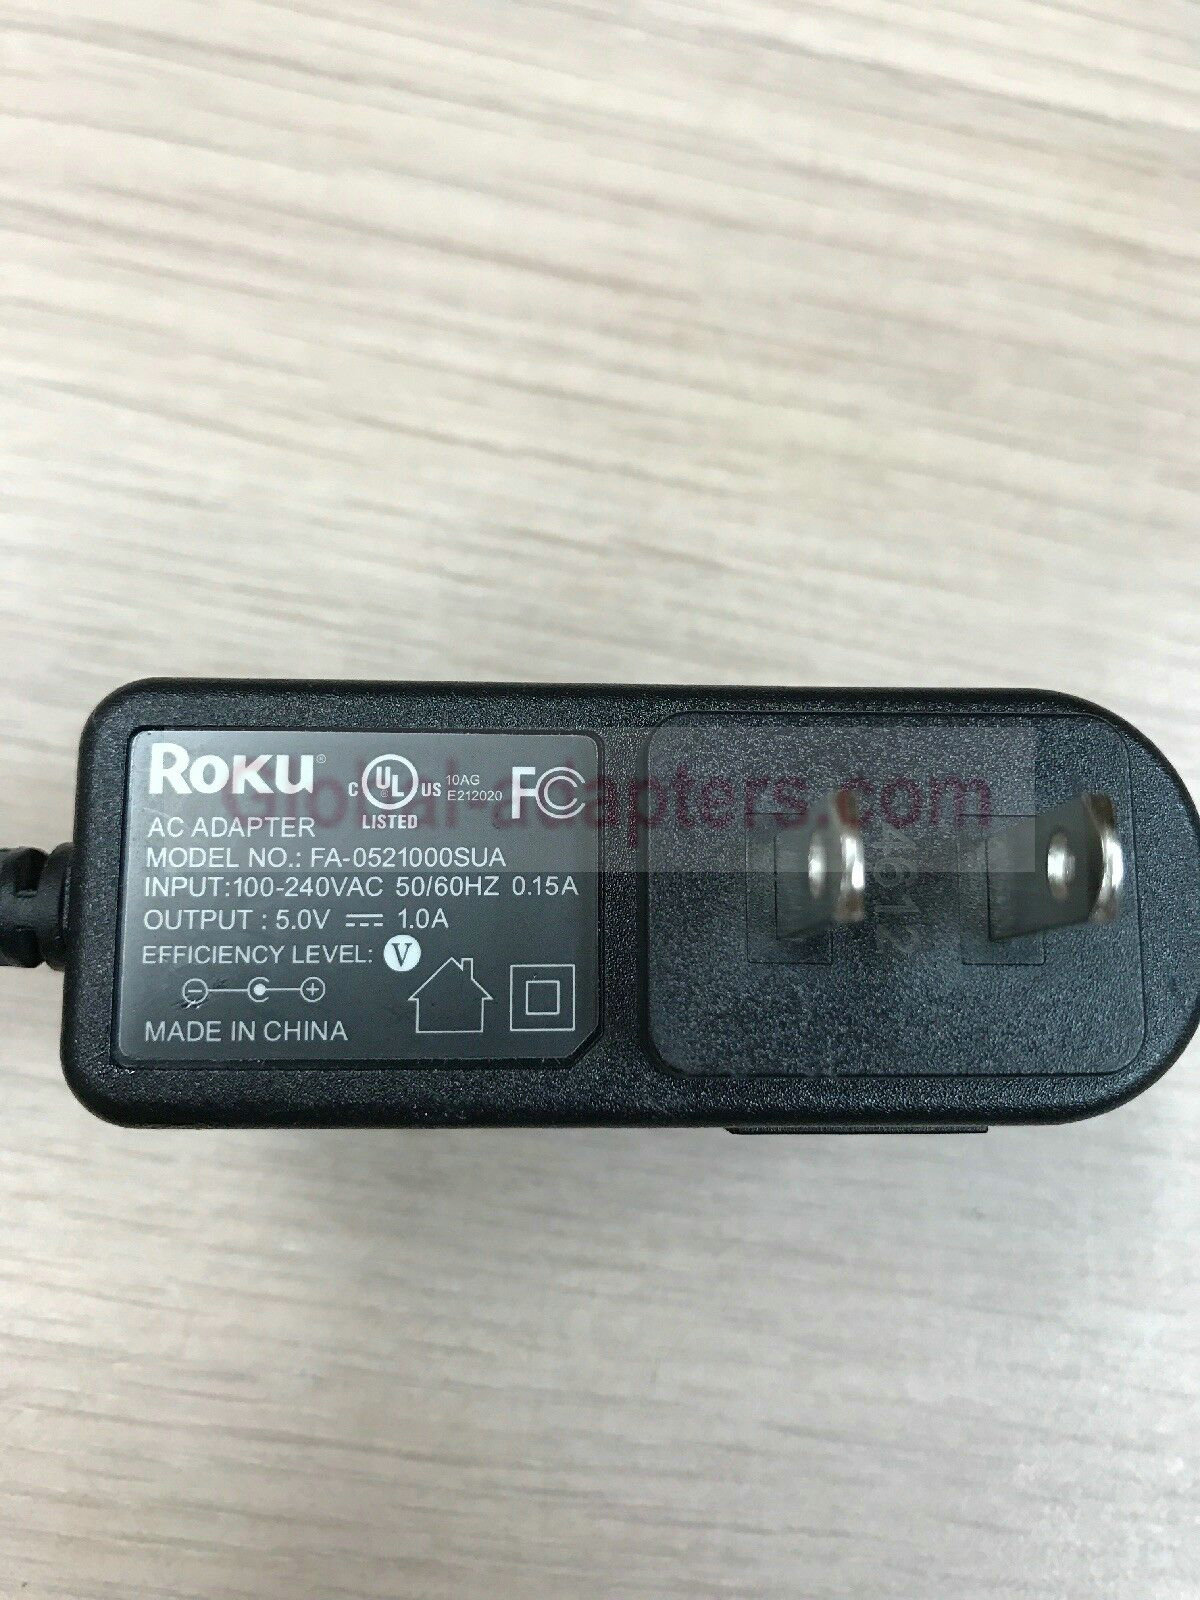 NEW 5V 1A Roku FA-0521000SUA AC Adapter